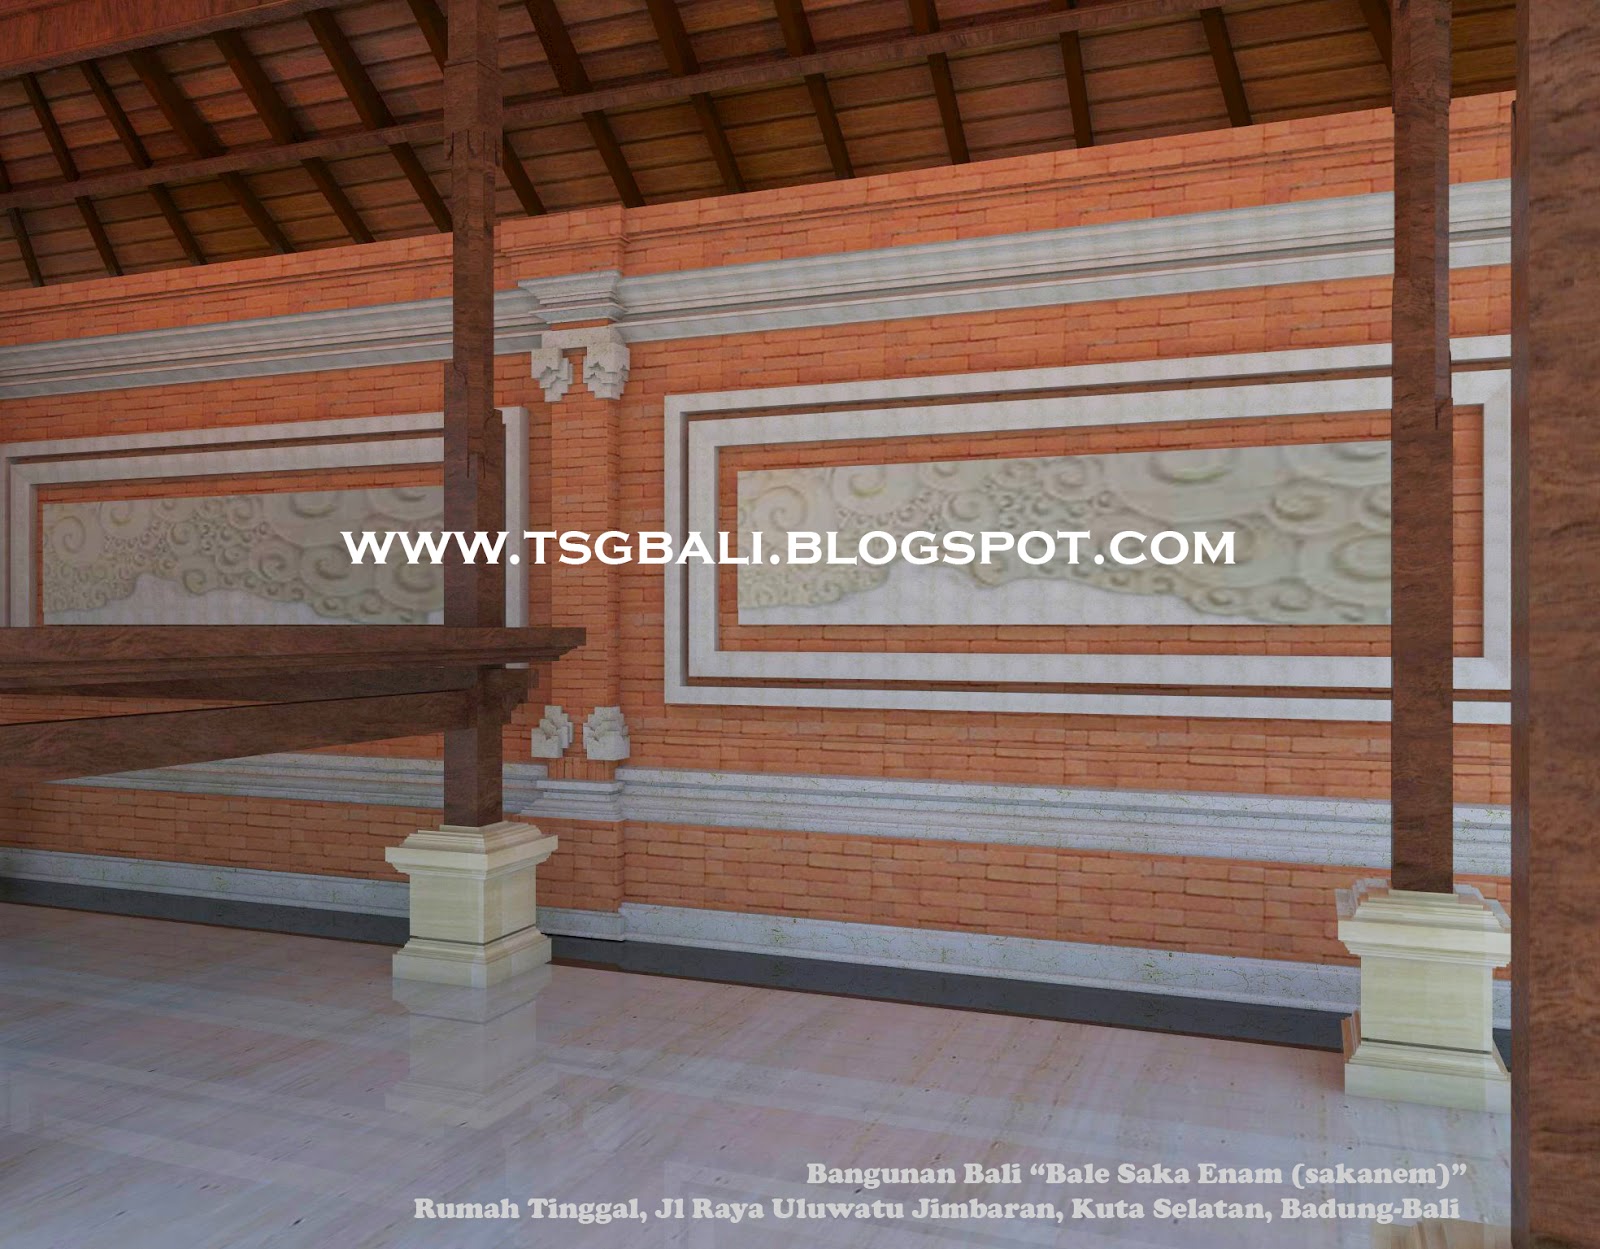 Desain Rumah Bale Bali : Bangunan Sakanem I Arsitektur 